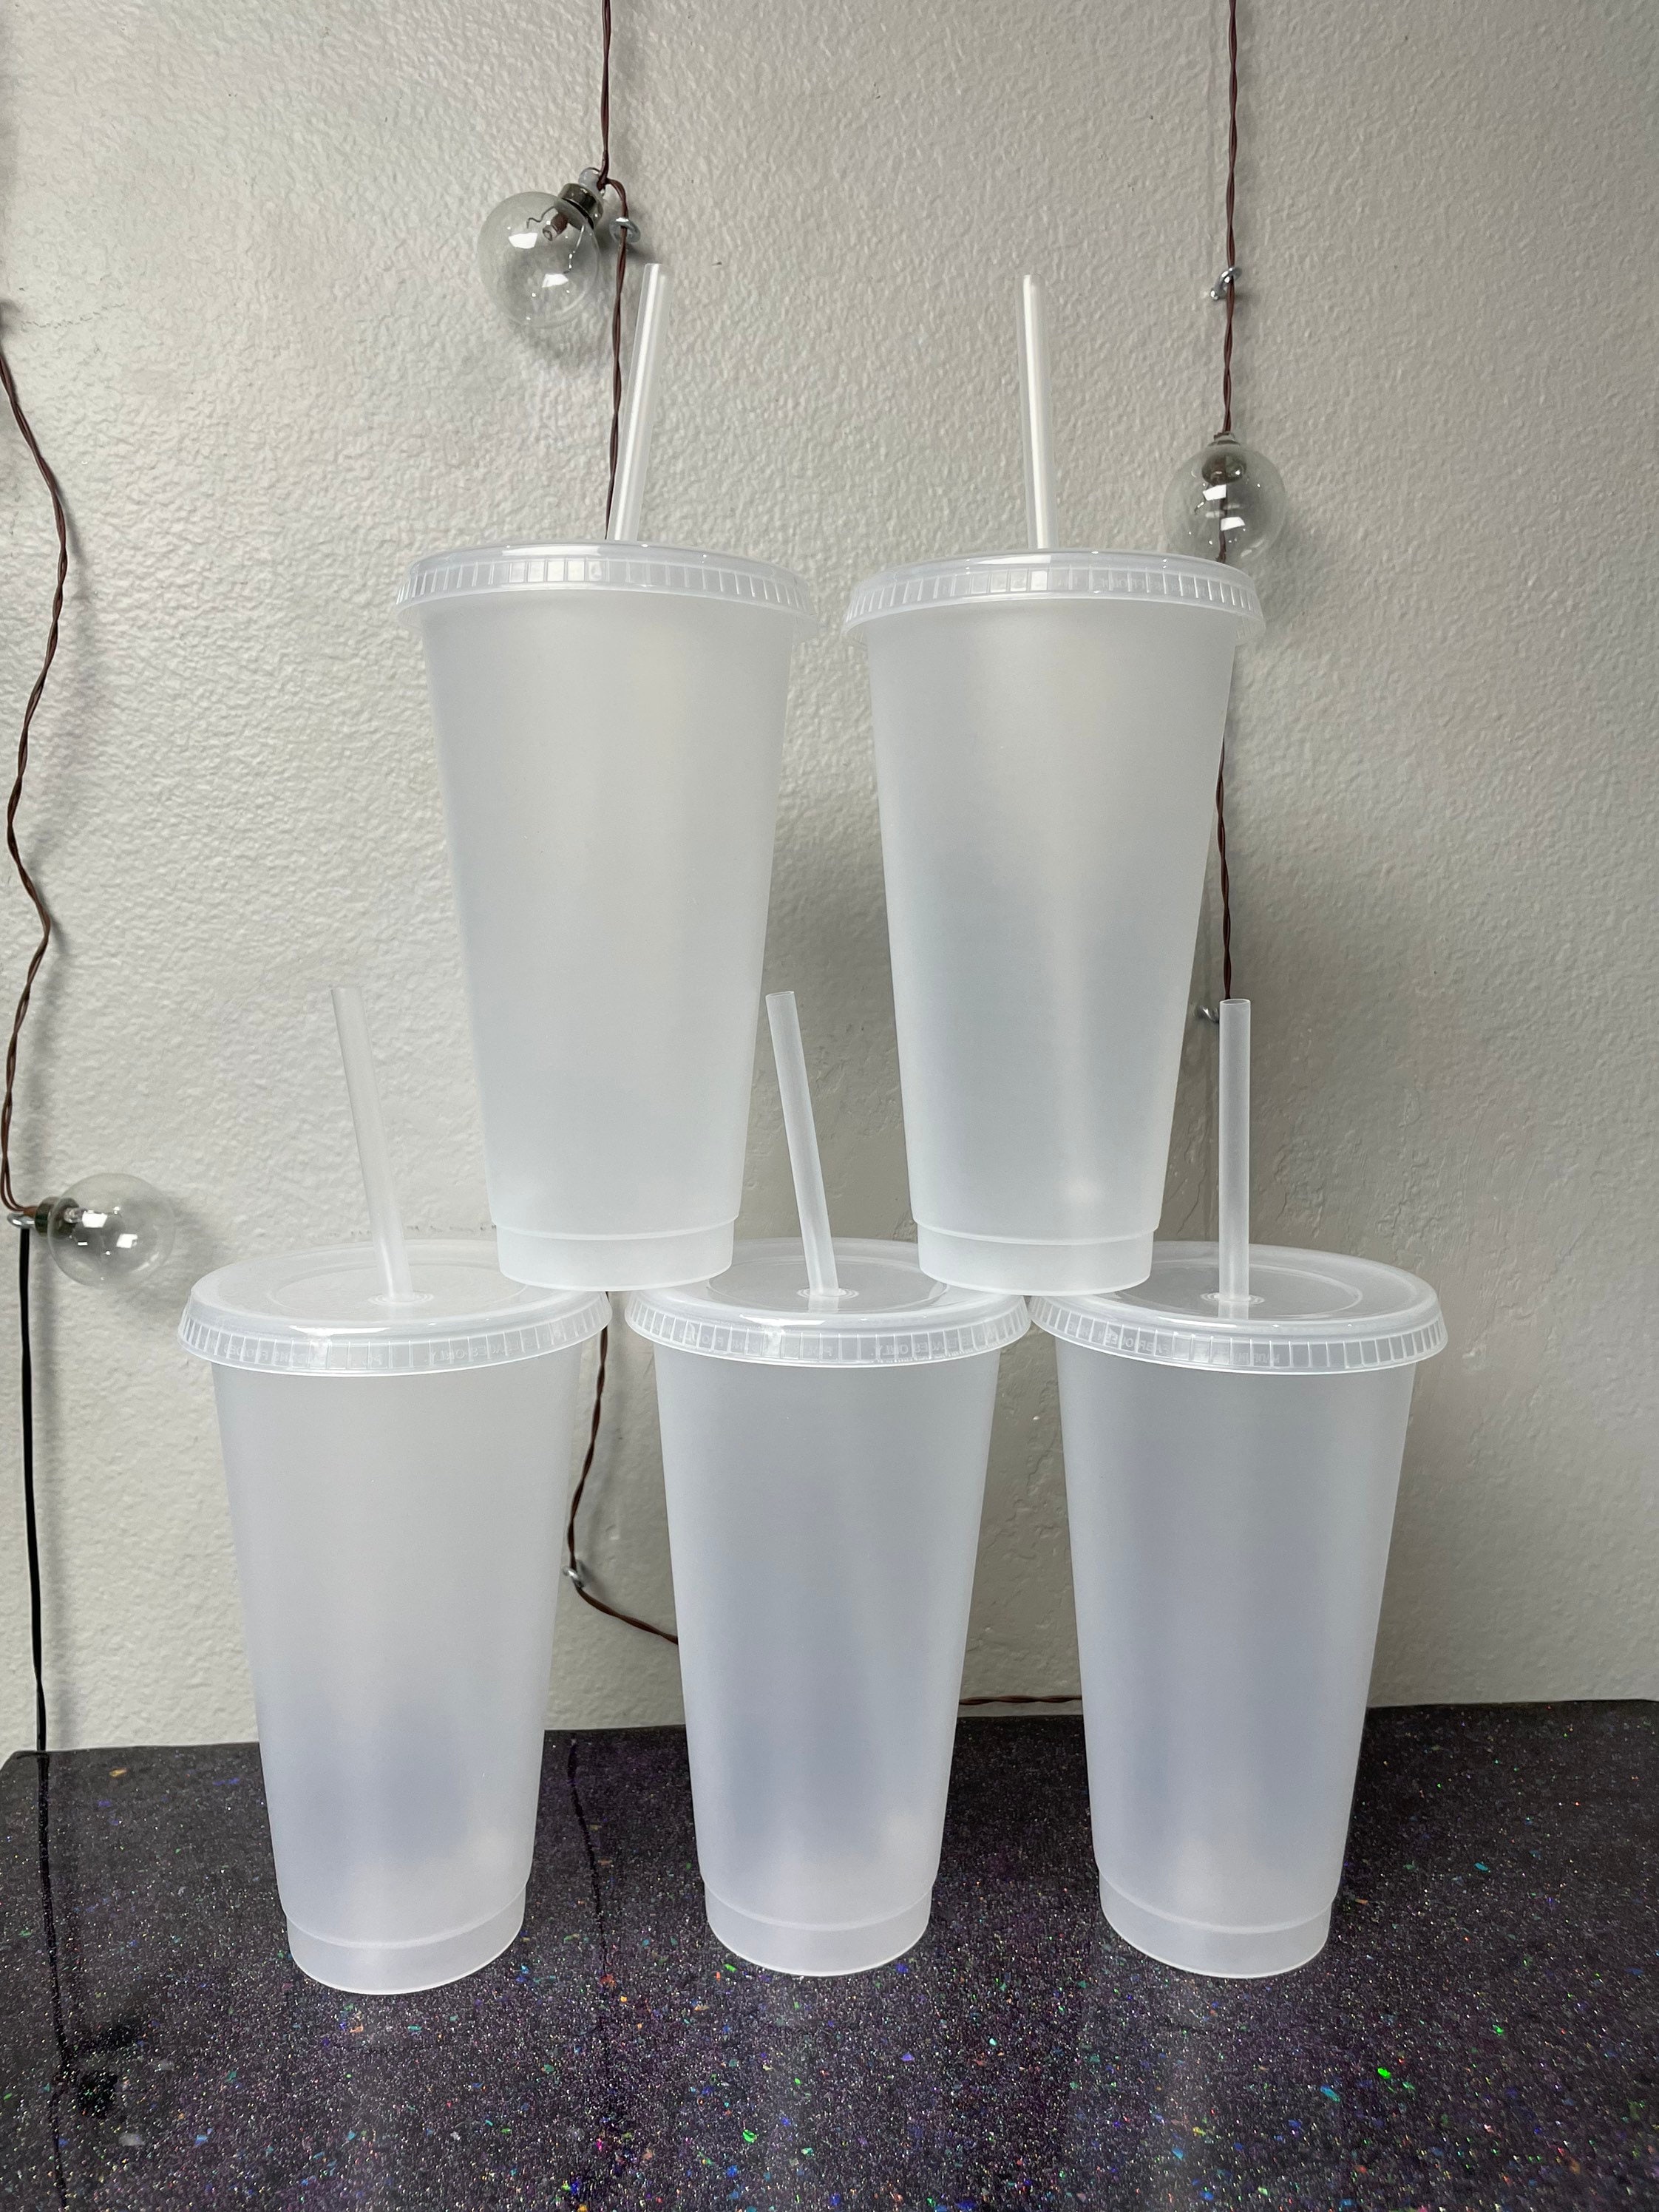 Youngever 7 Sets 4OZ Plastic Parfait Cups, Reusable Plastic